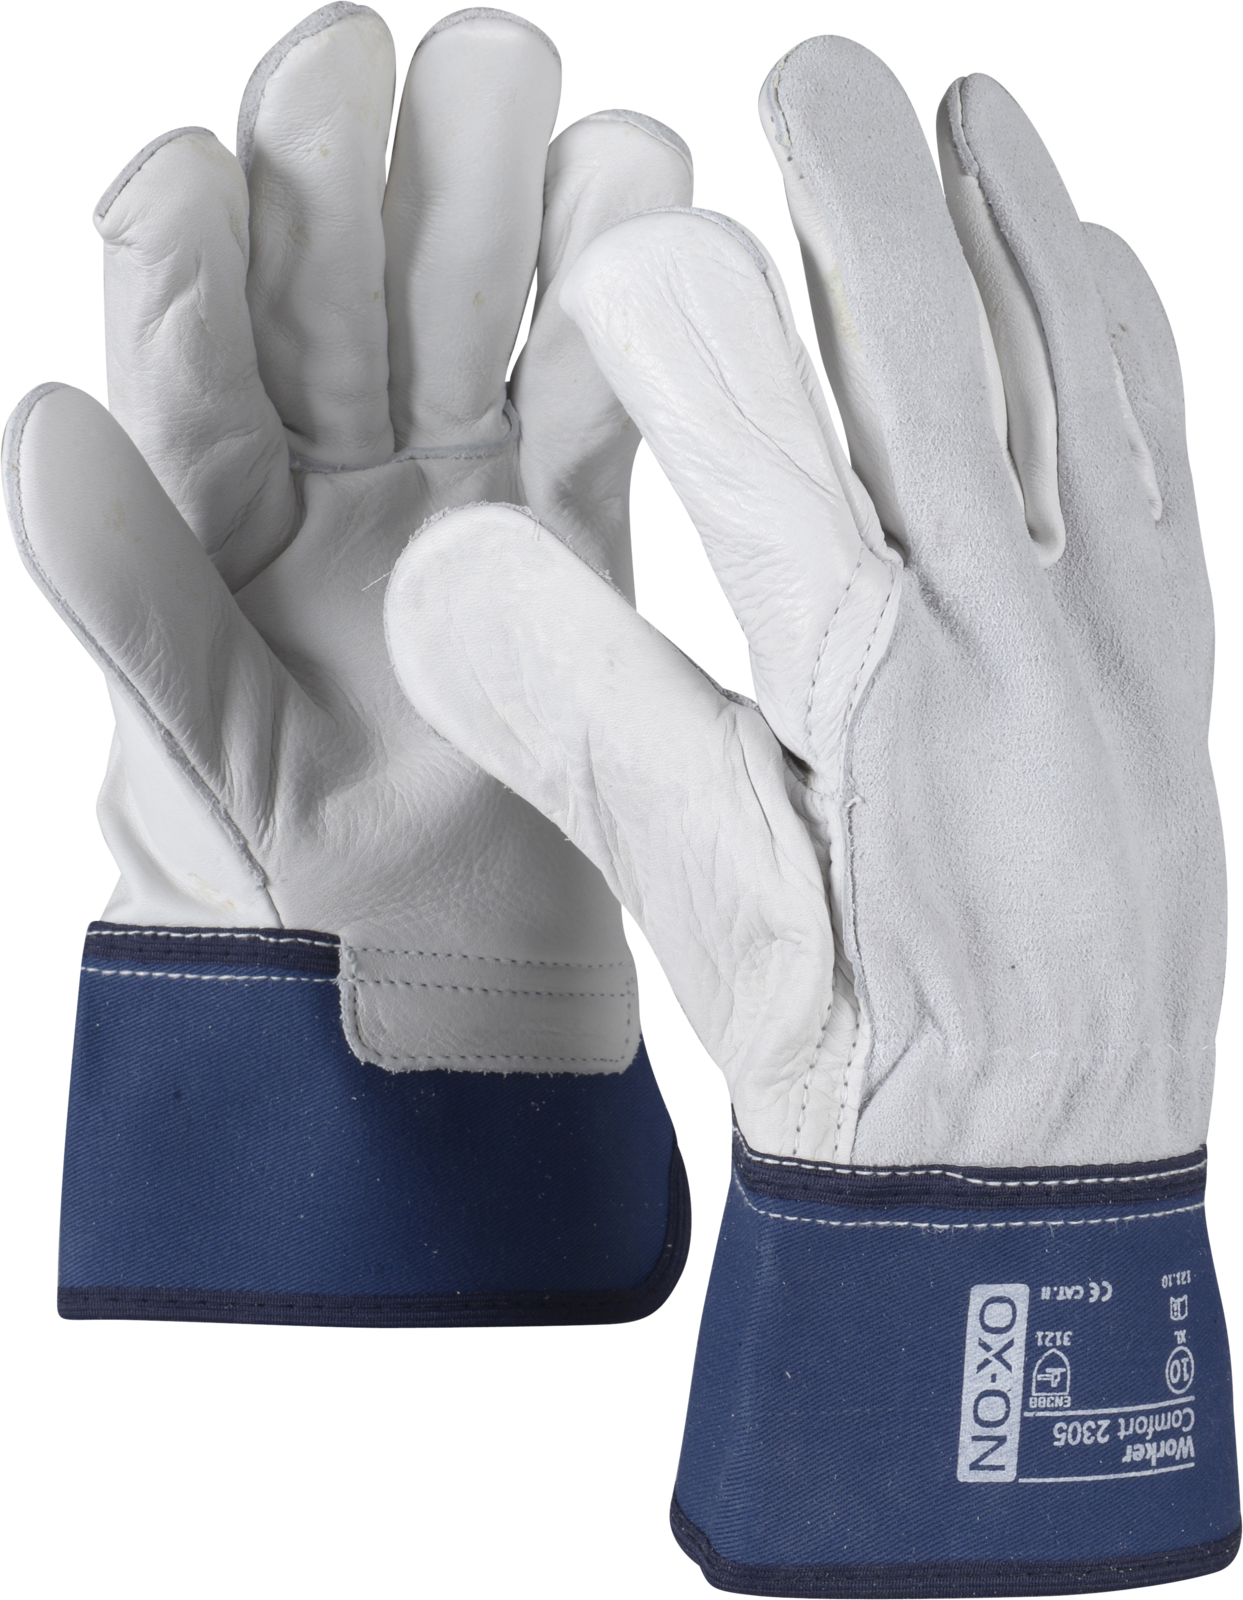 OX-ON Worker Comfort 2305 Rindvolllederhandschuh mit Spaltlederrücken und solidem Hitzeschutz